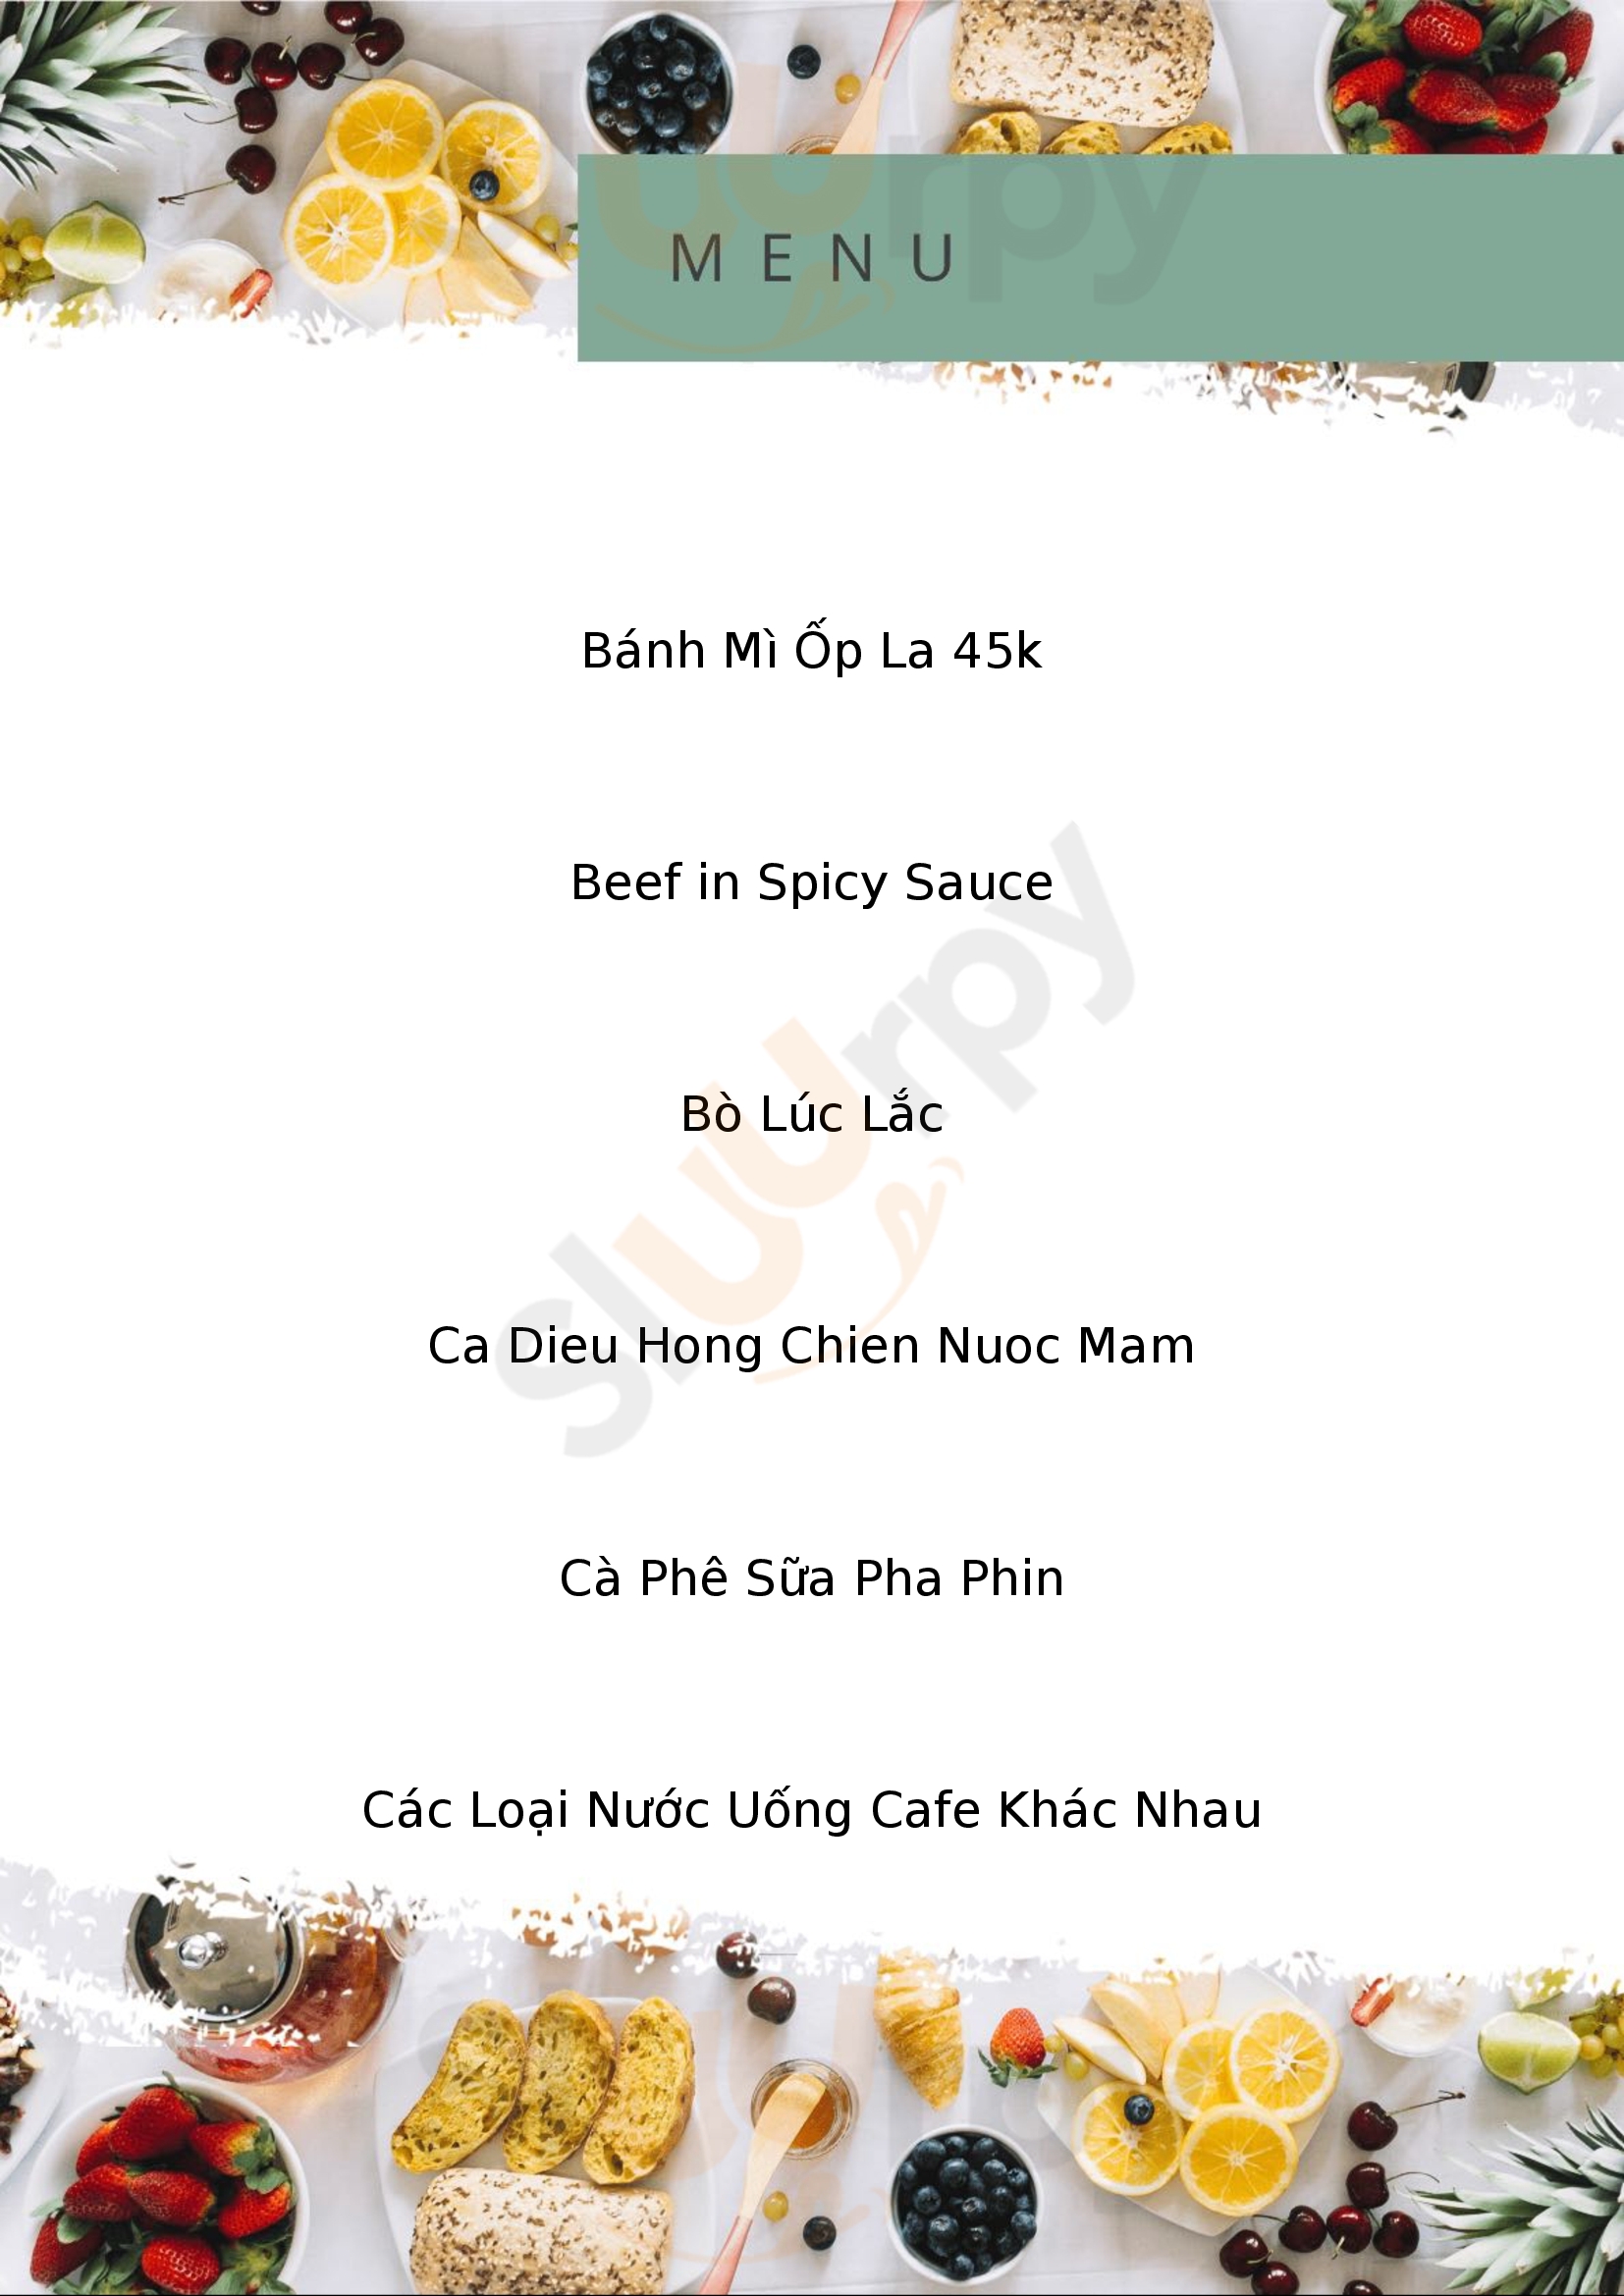 Teemay Coffee - Cong Hoa Thành phố Hồ Chí Minh Menu - 1